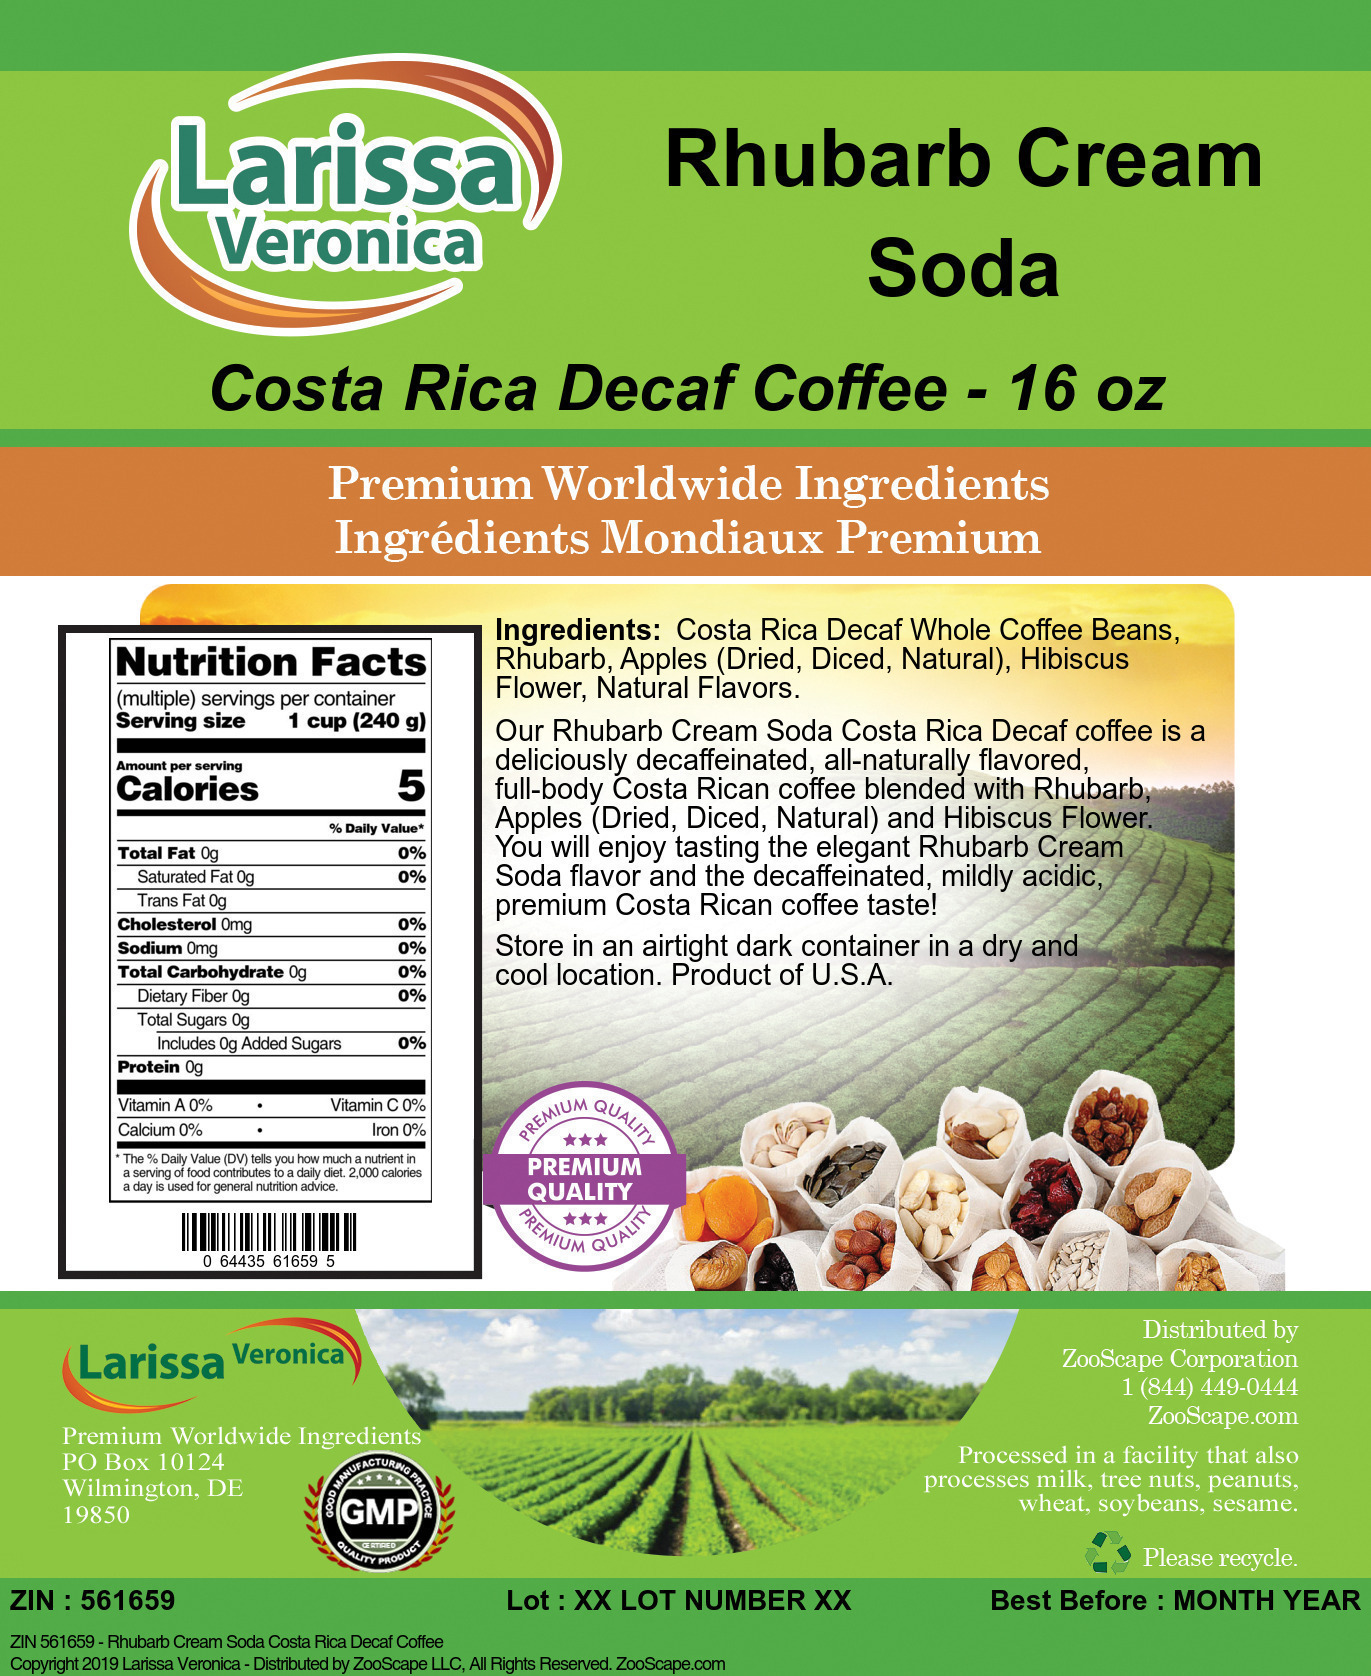 Rhubarb Cream Soda Costa Rica Decaf Coffee - Label